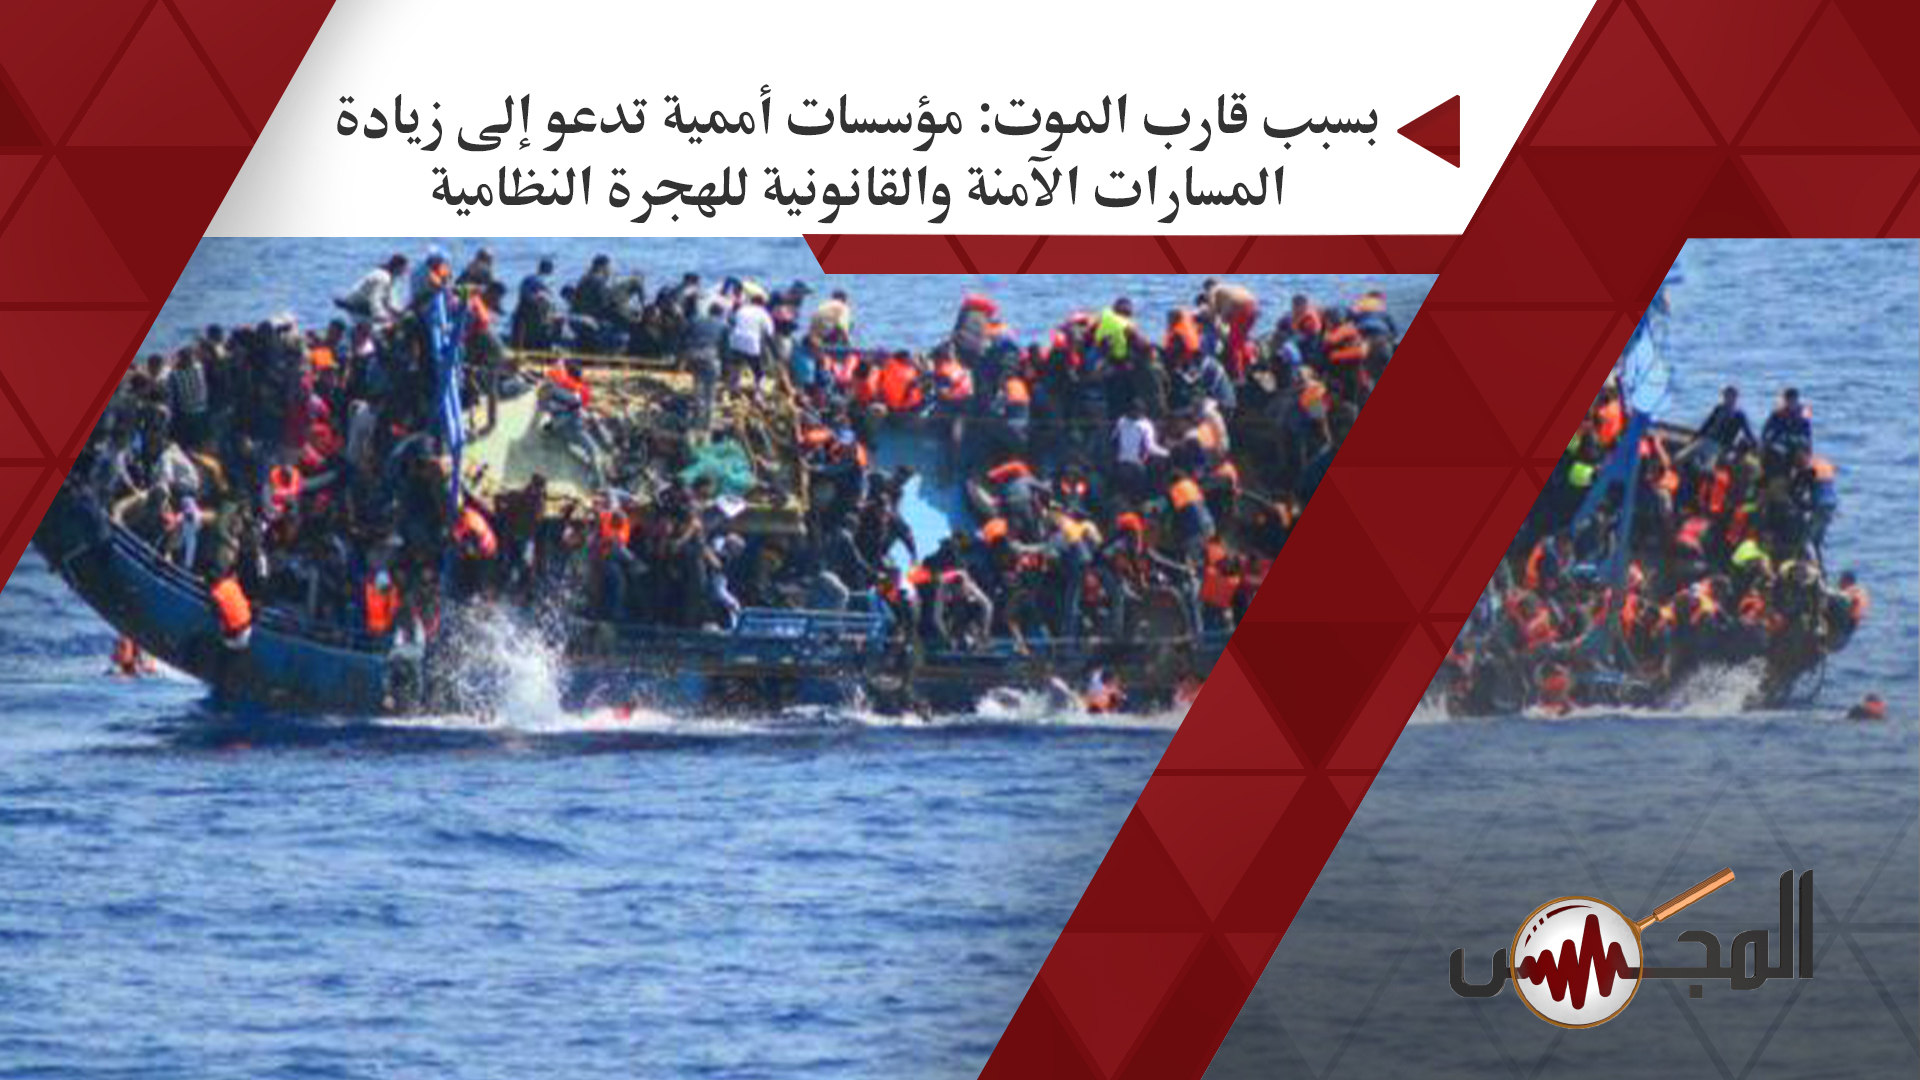 بسبب قارب الموت: مؤسسات أممية تدعو إلى زيادة المسارات الآمنة والقانونية للهجرة النظامية 